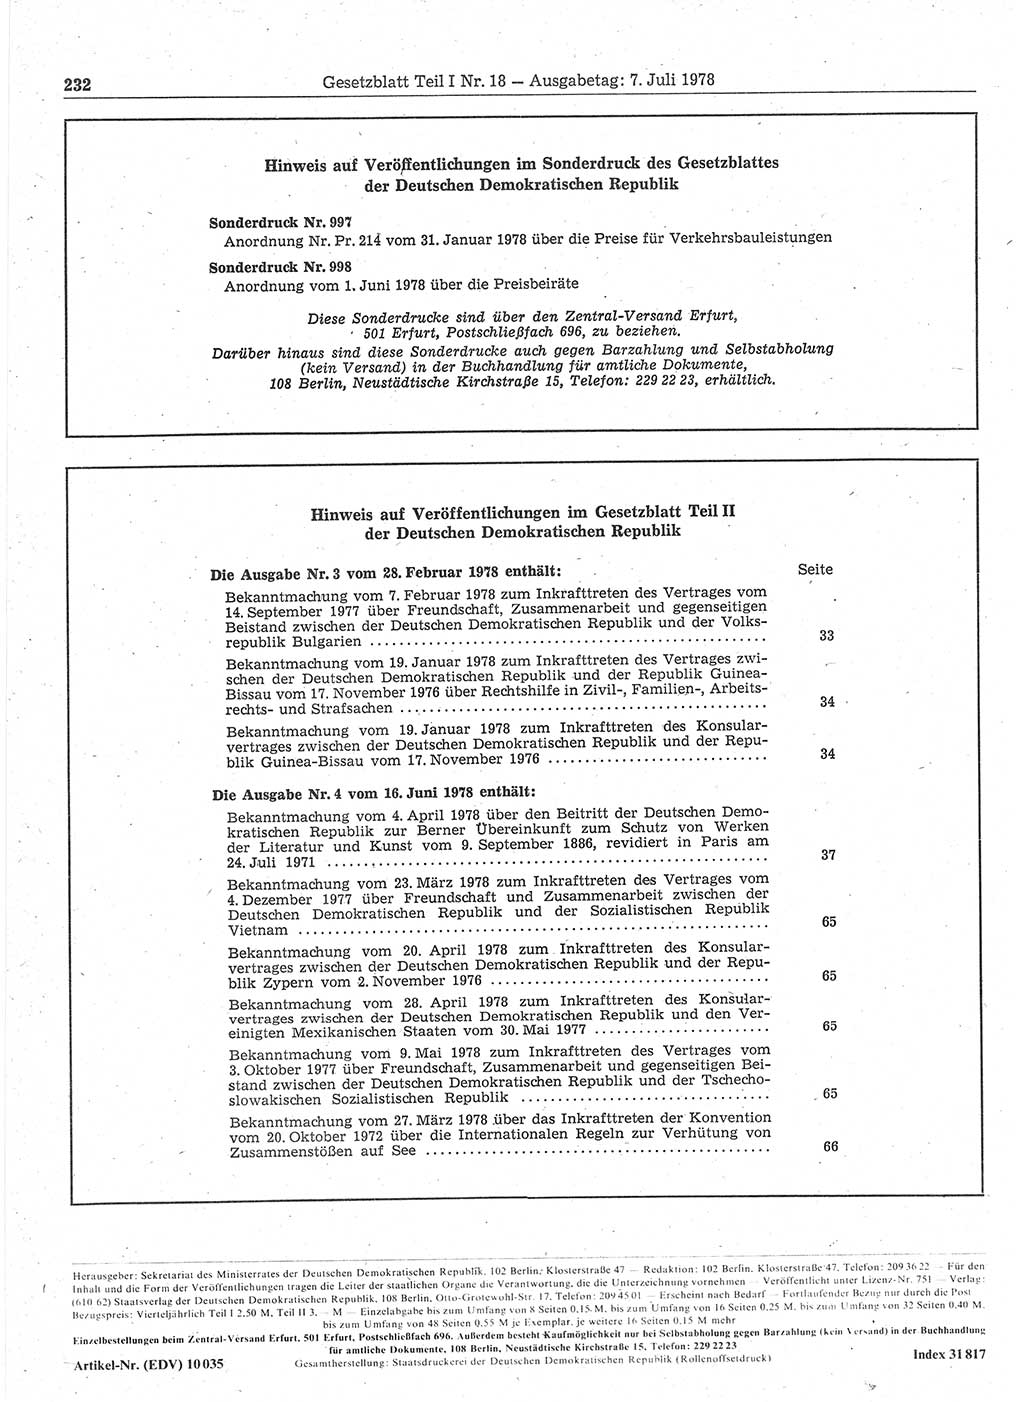 Gesetzblatt (GBl.) der Deutschen Demokratischen Republik (DDR) Teil Ⅰ 1978, Seite 232 (GBl. DDR Ⅰ 1978, S. 232)